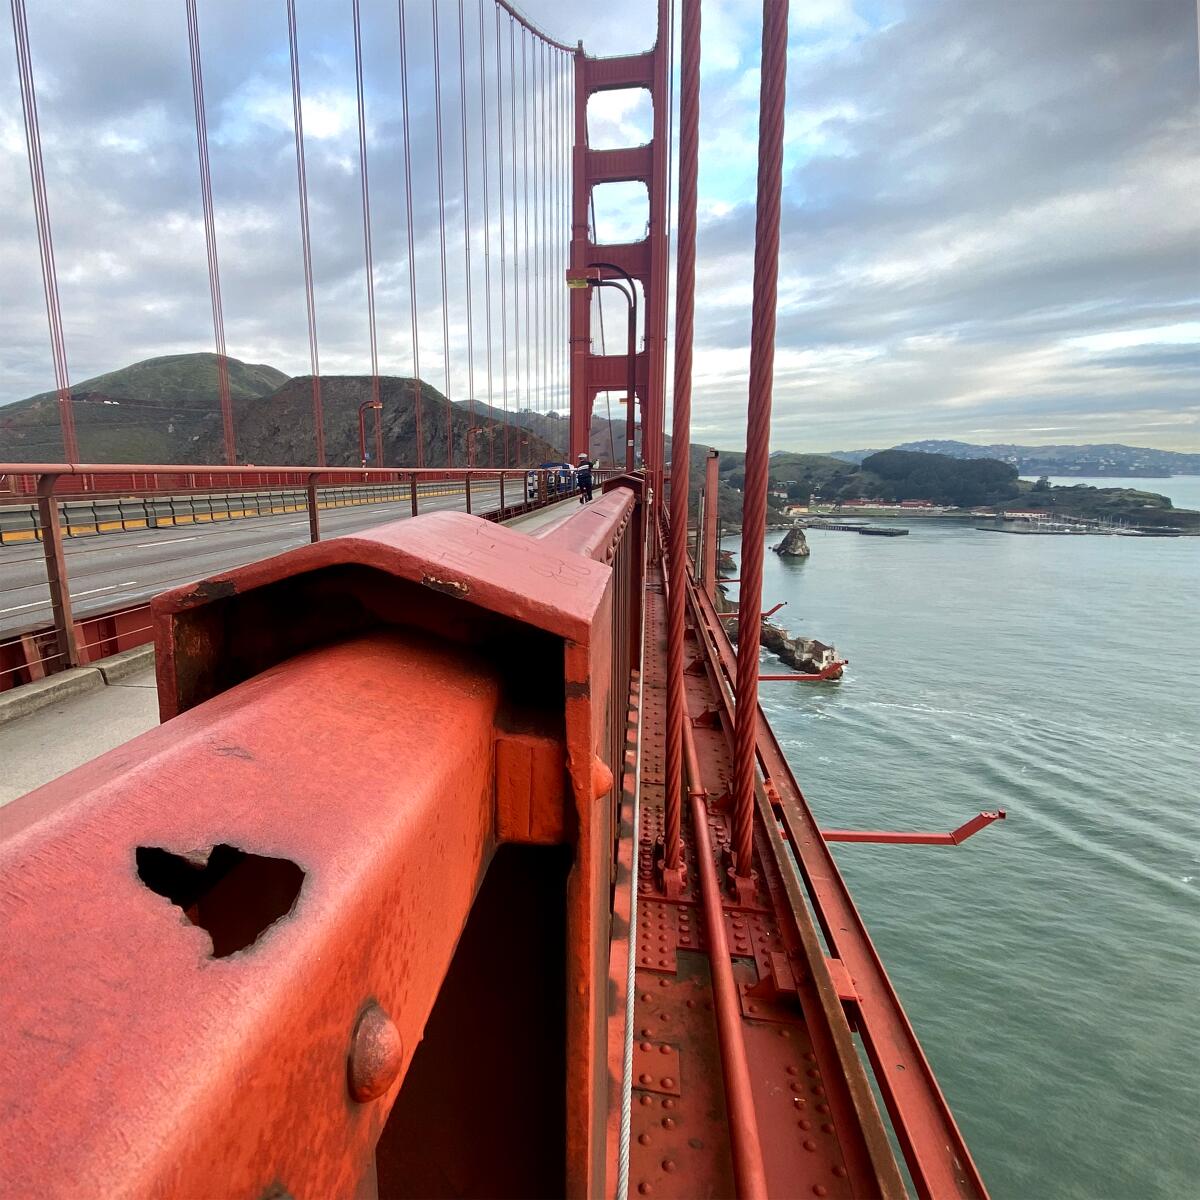 A heart-shaped rust spot on the Golden Gate Bridge.